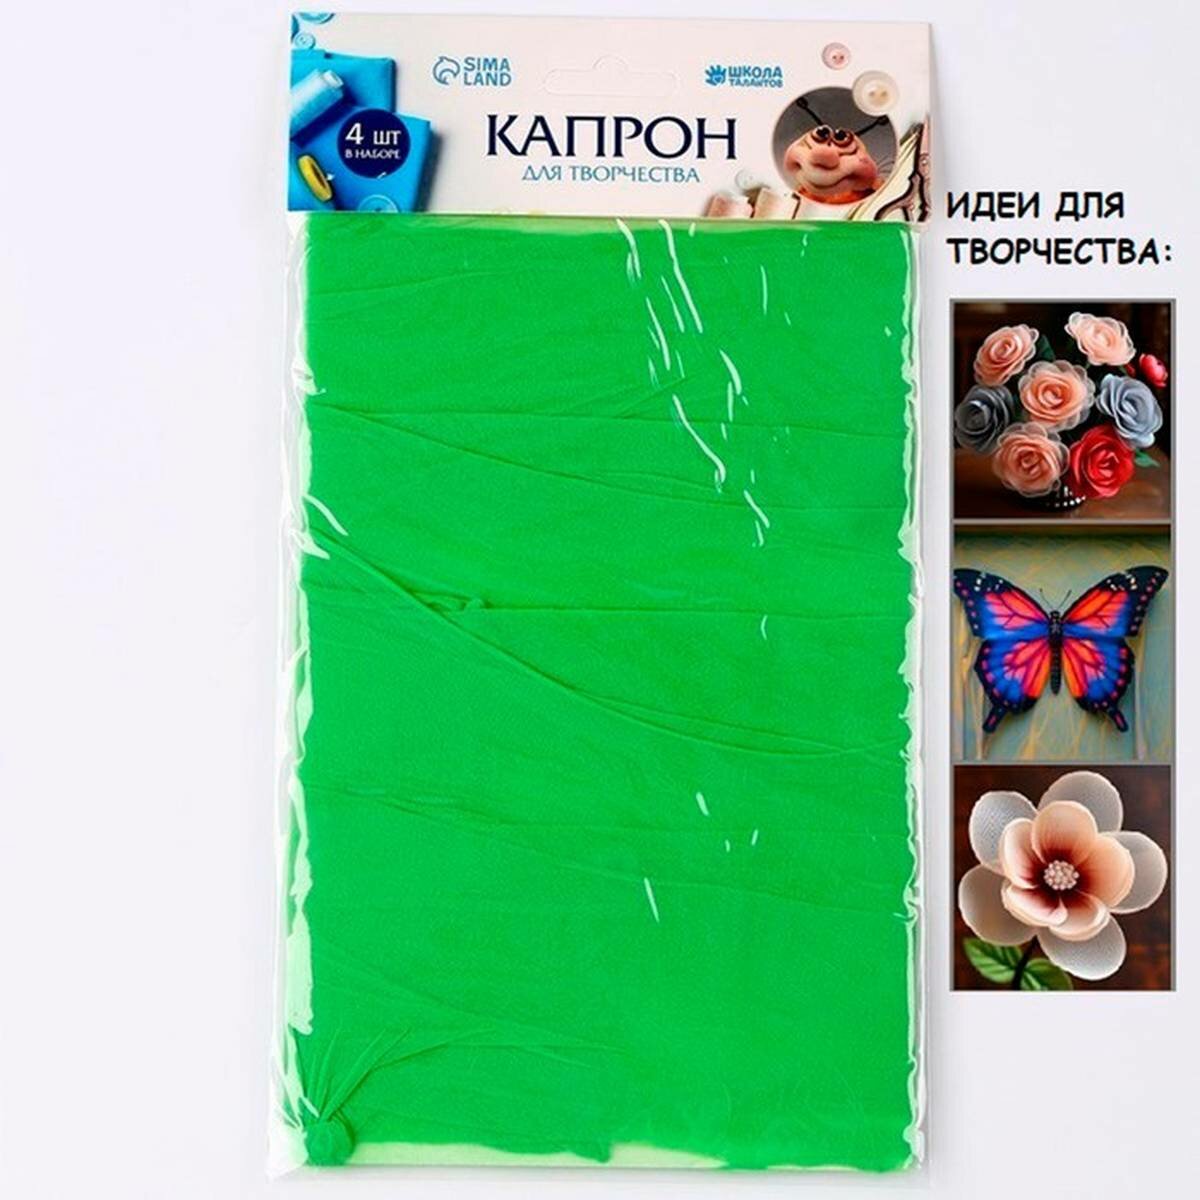 Ткань для рукоделия Школа талантов - капрон для кукол и цветов, 45x6 см, зелёный, 4 шт в наборе